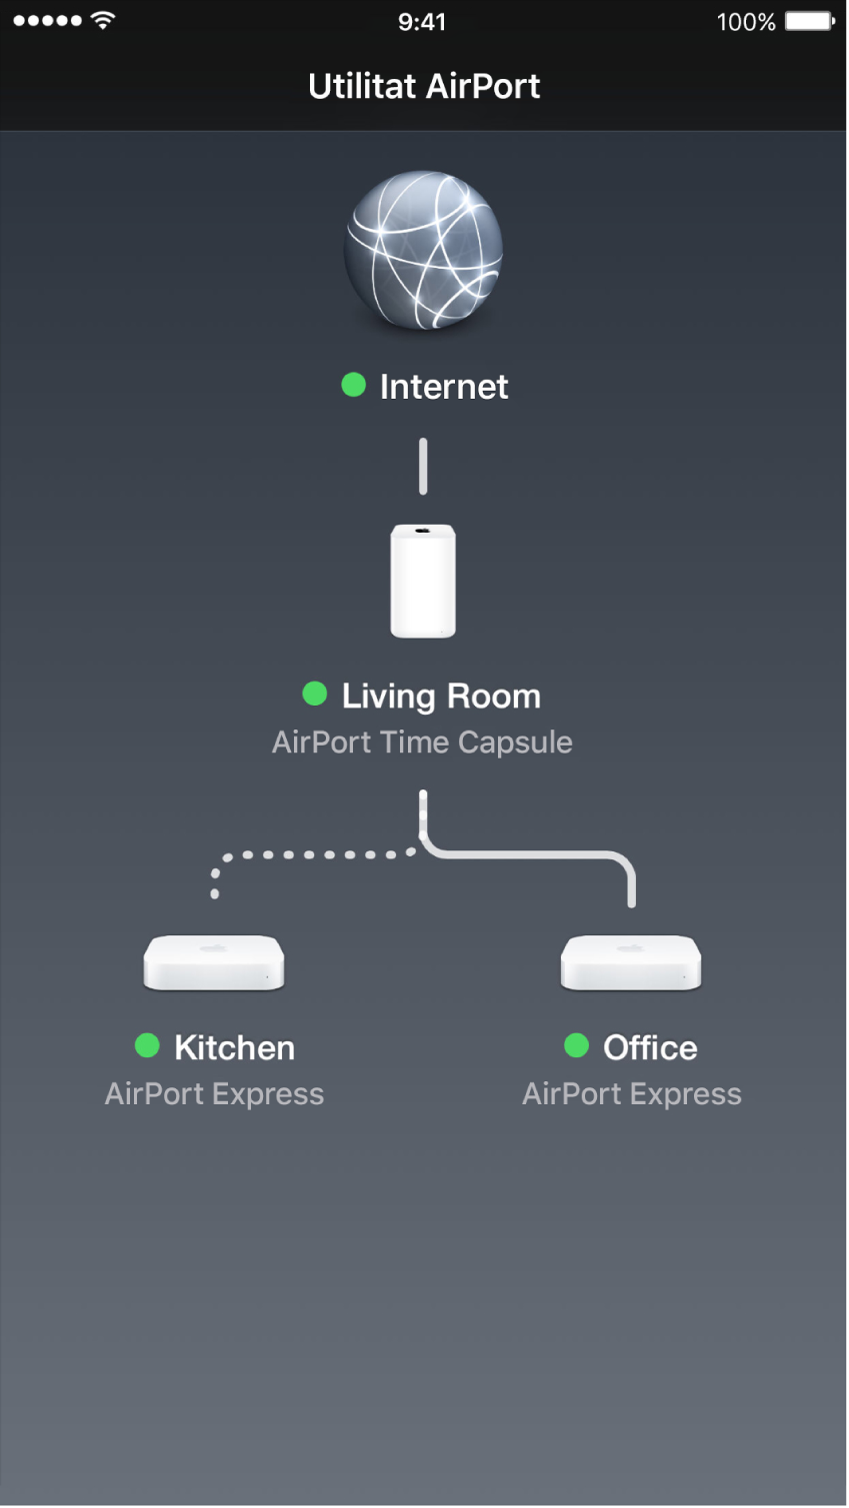 Esquema gràfic a la Utilitat AirPort per a l’iOS.